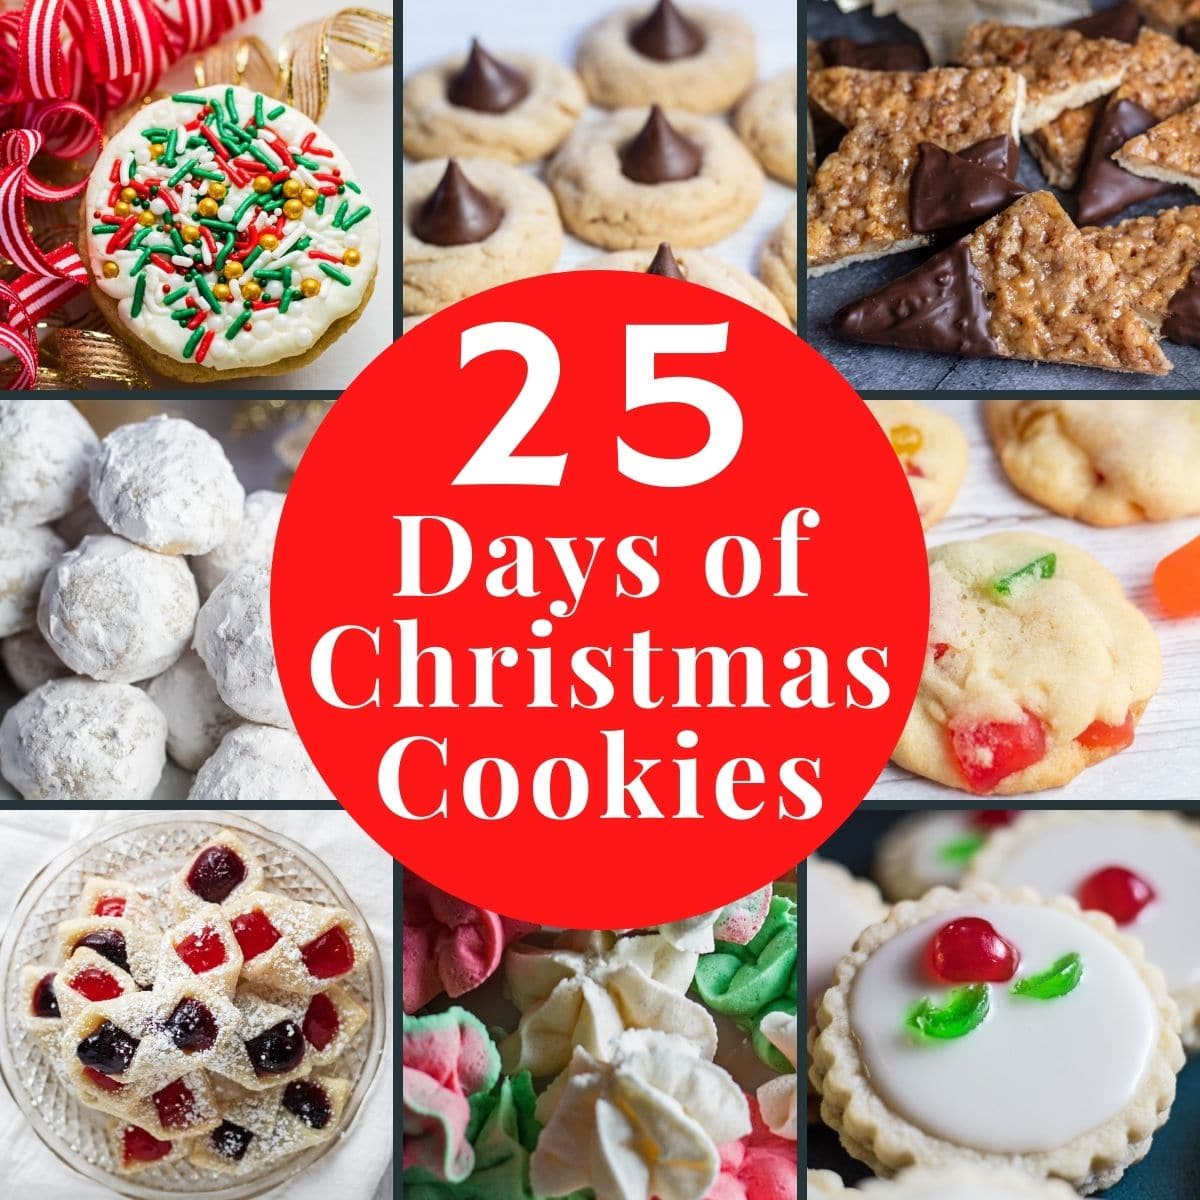 Image de collage de 25 jours de biscuits de Noël avec 8 carreaux et superposition de texte.